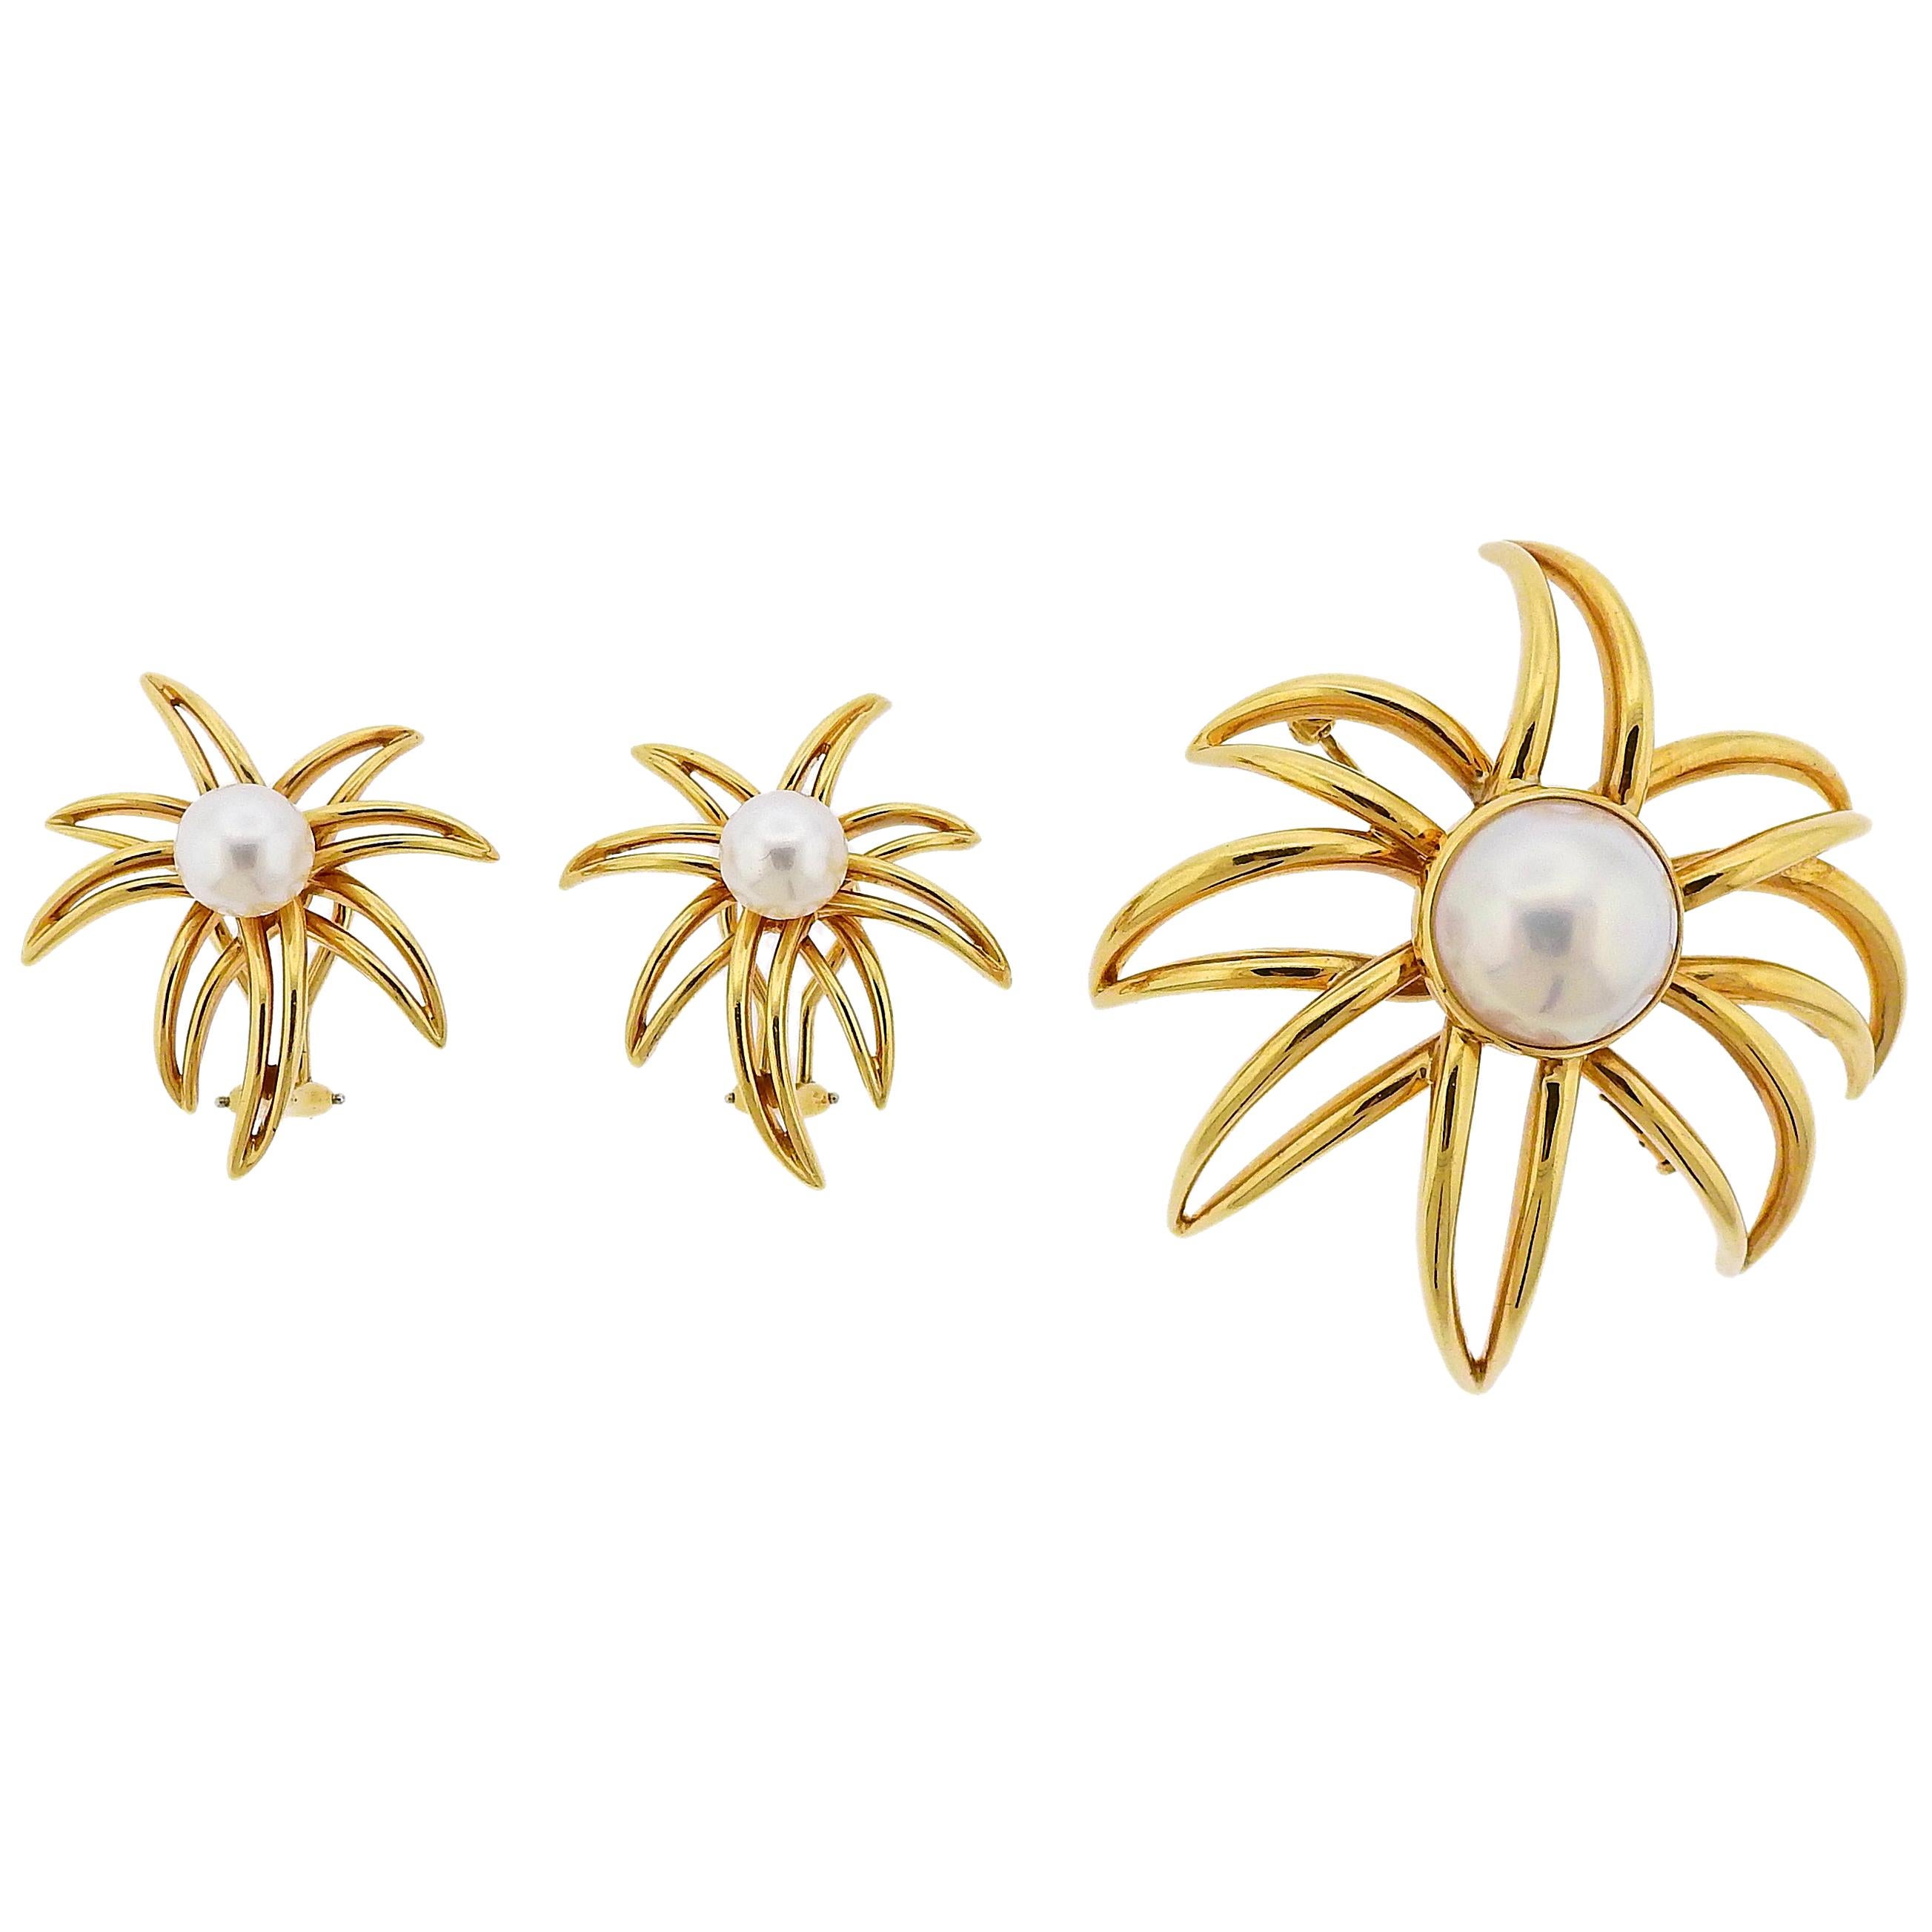 Tiffany & Co. Fireworks Pearl Gold Earrings Brooch Set